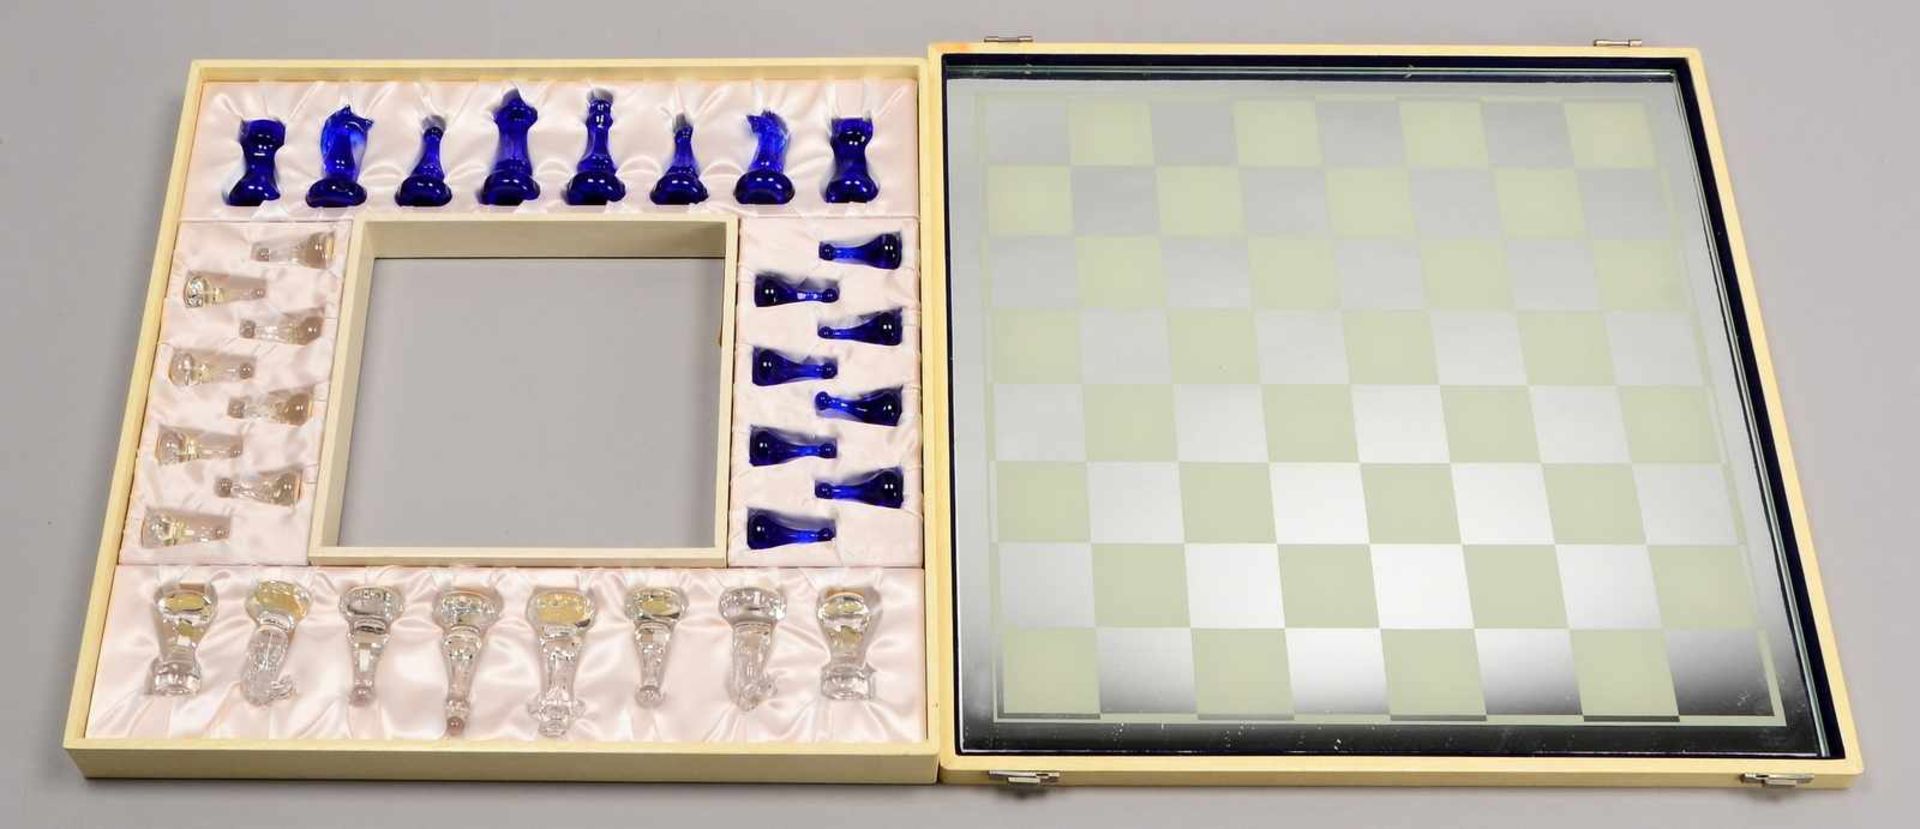 Villeroy & Boch, Glas-Schachspiel, Bleikristall-Figuren in klarem und blauem Glas, mit Glas-